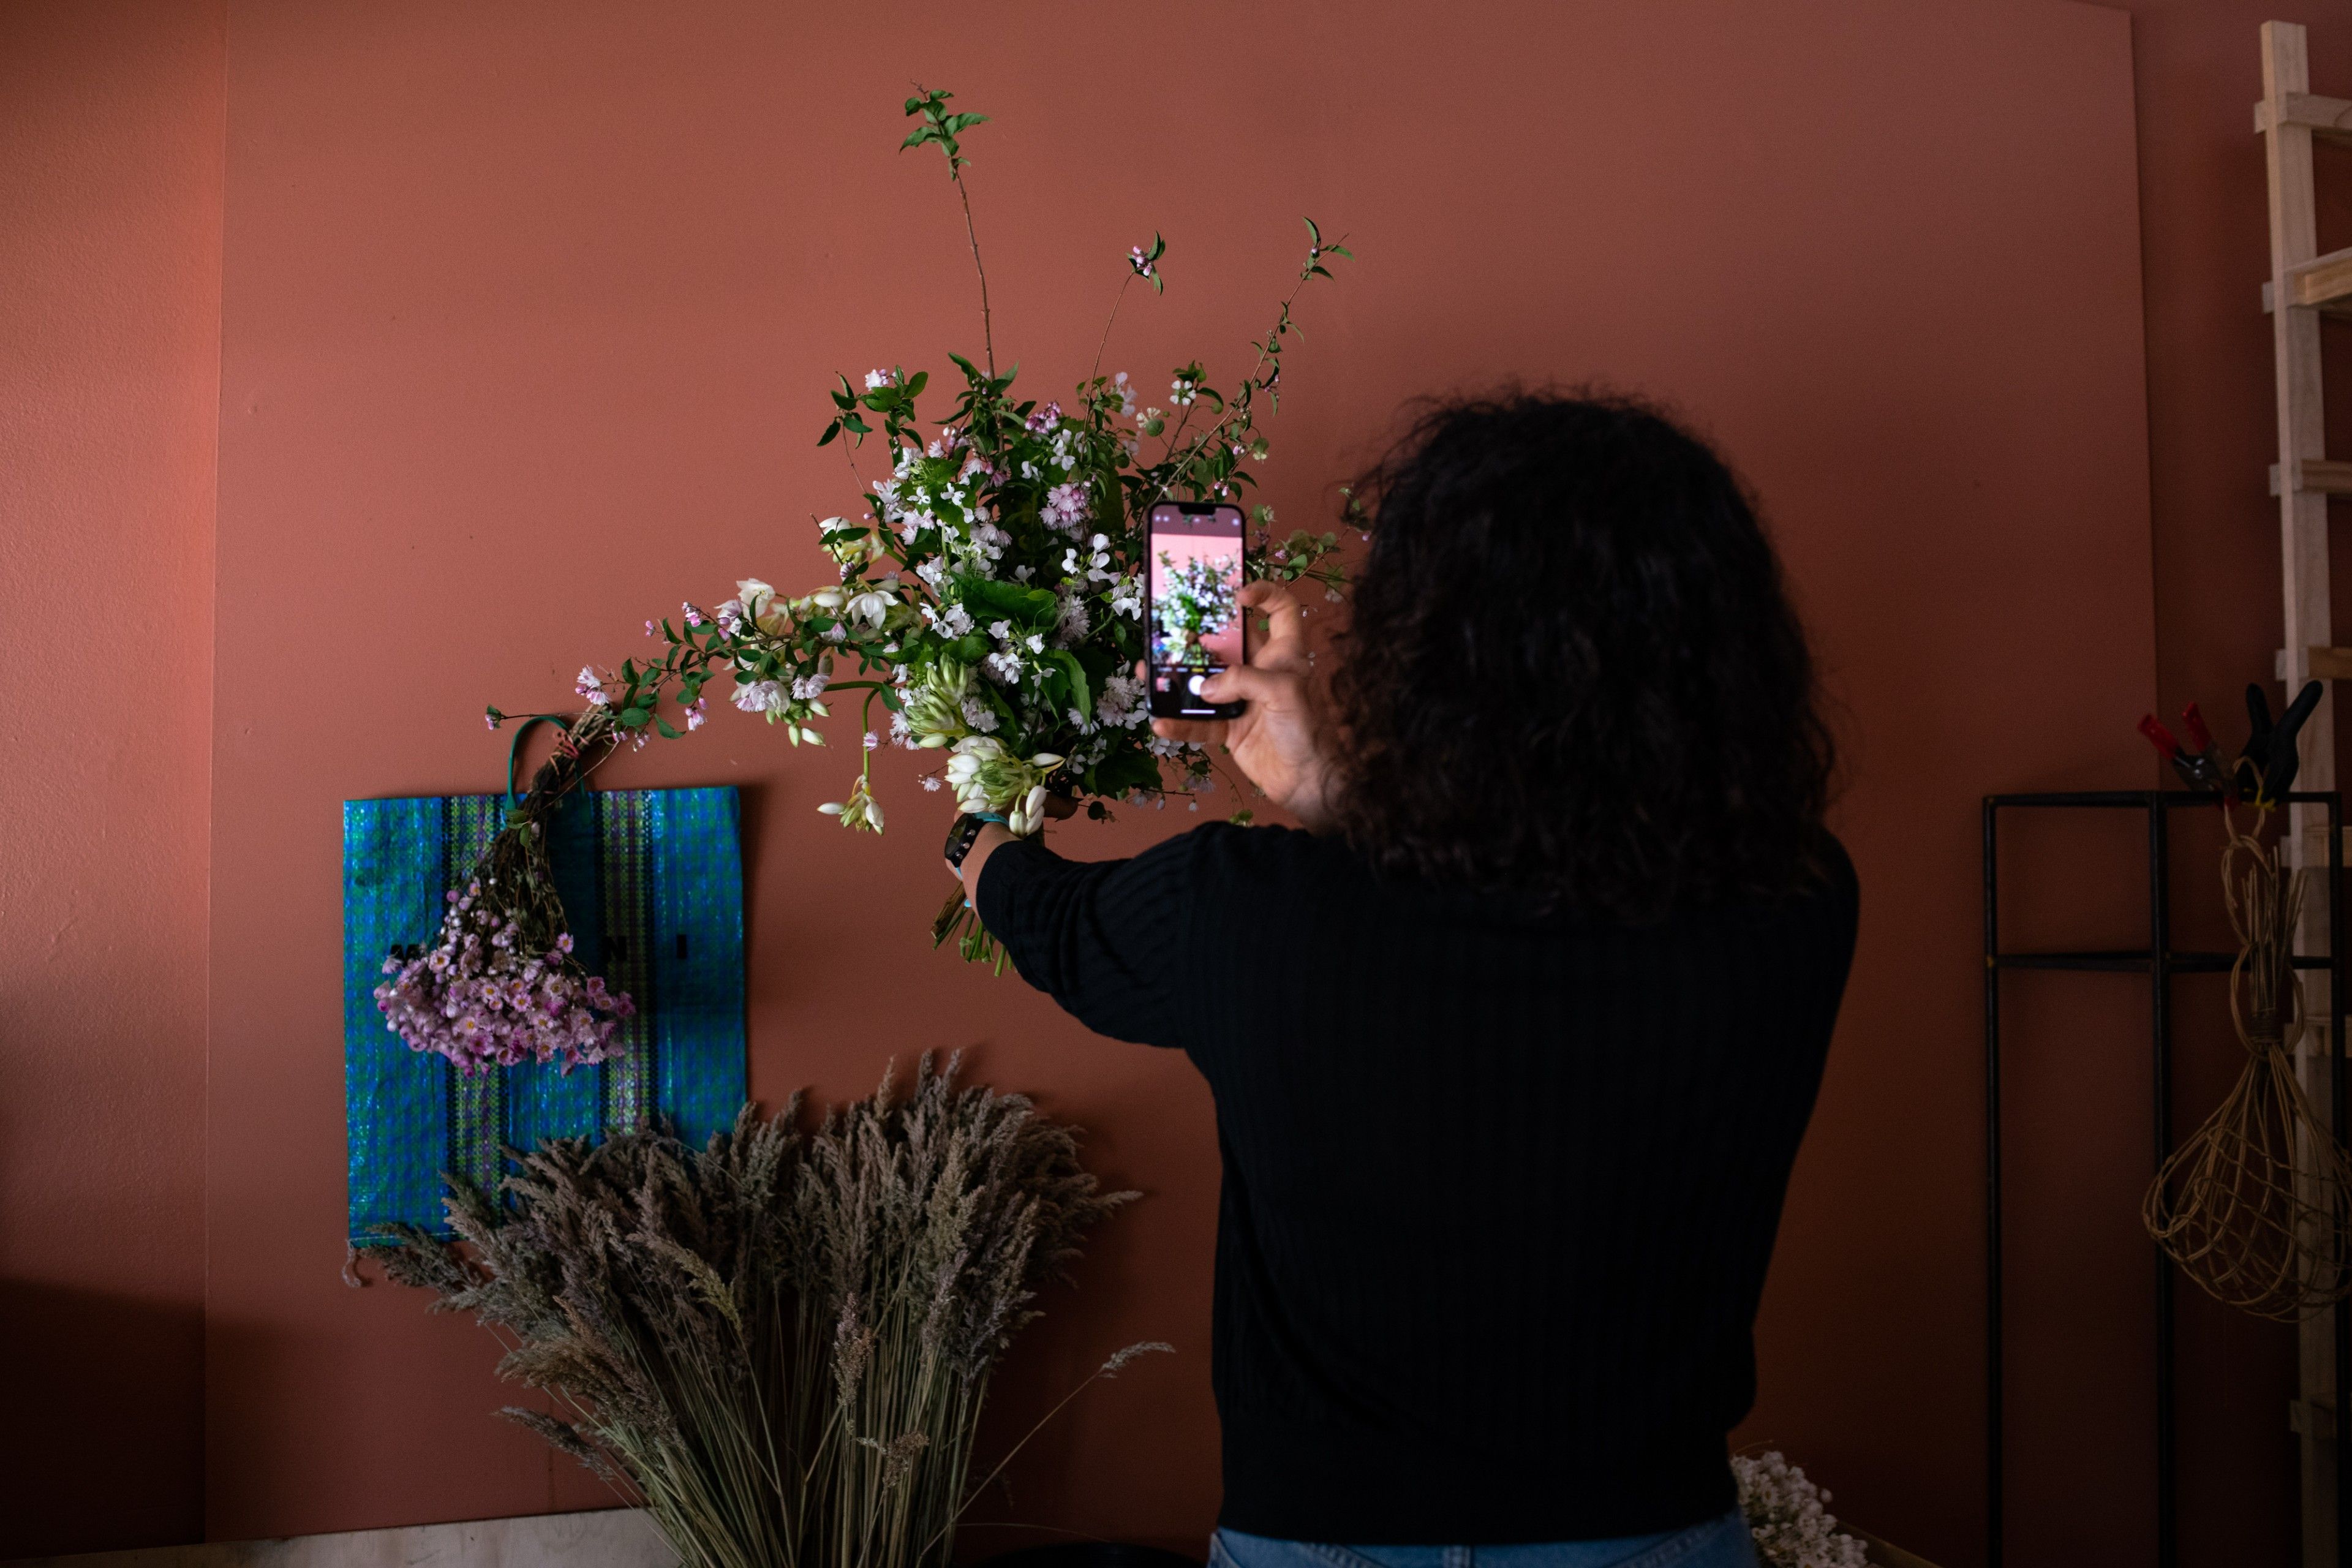 전자상거래 사이트에 올리기 위해 꽃 사진을 찍고 있는 플로리스트